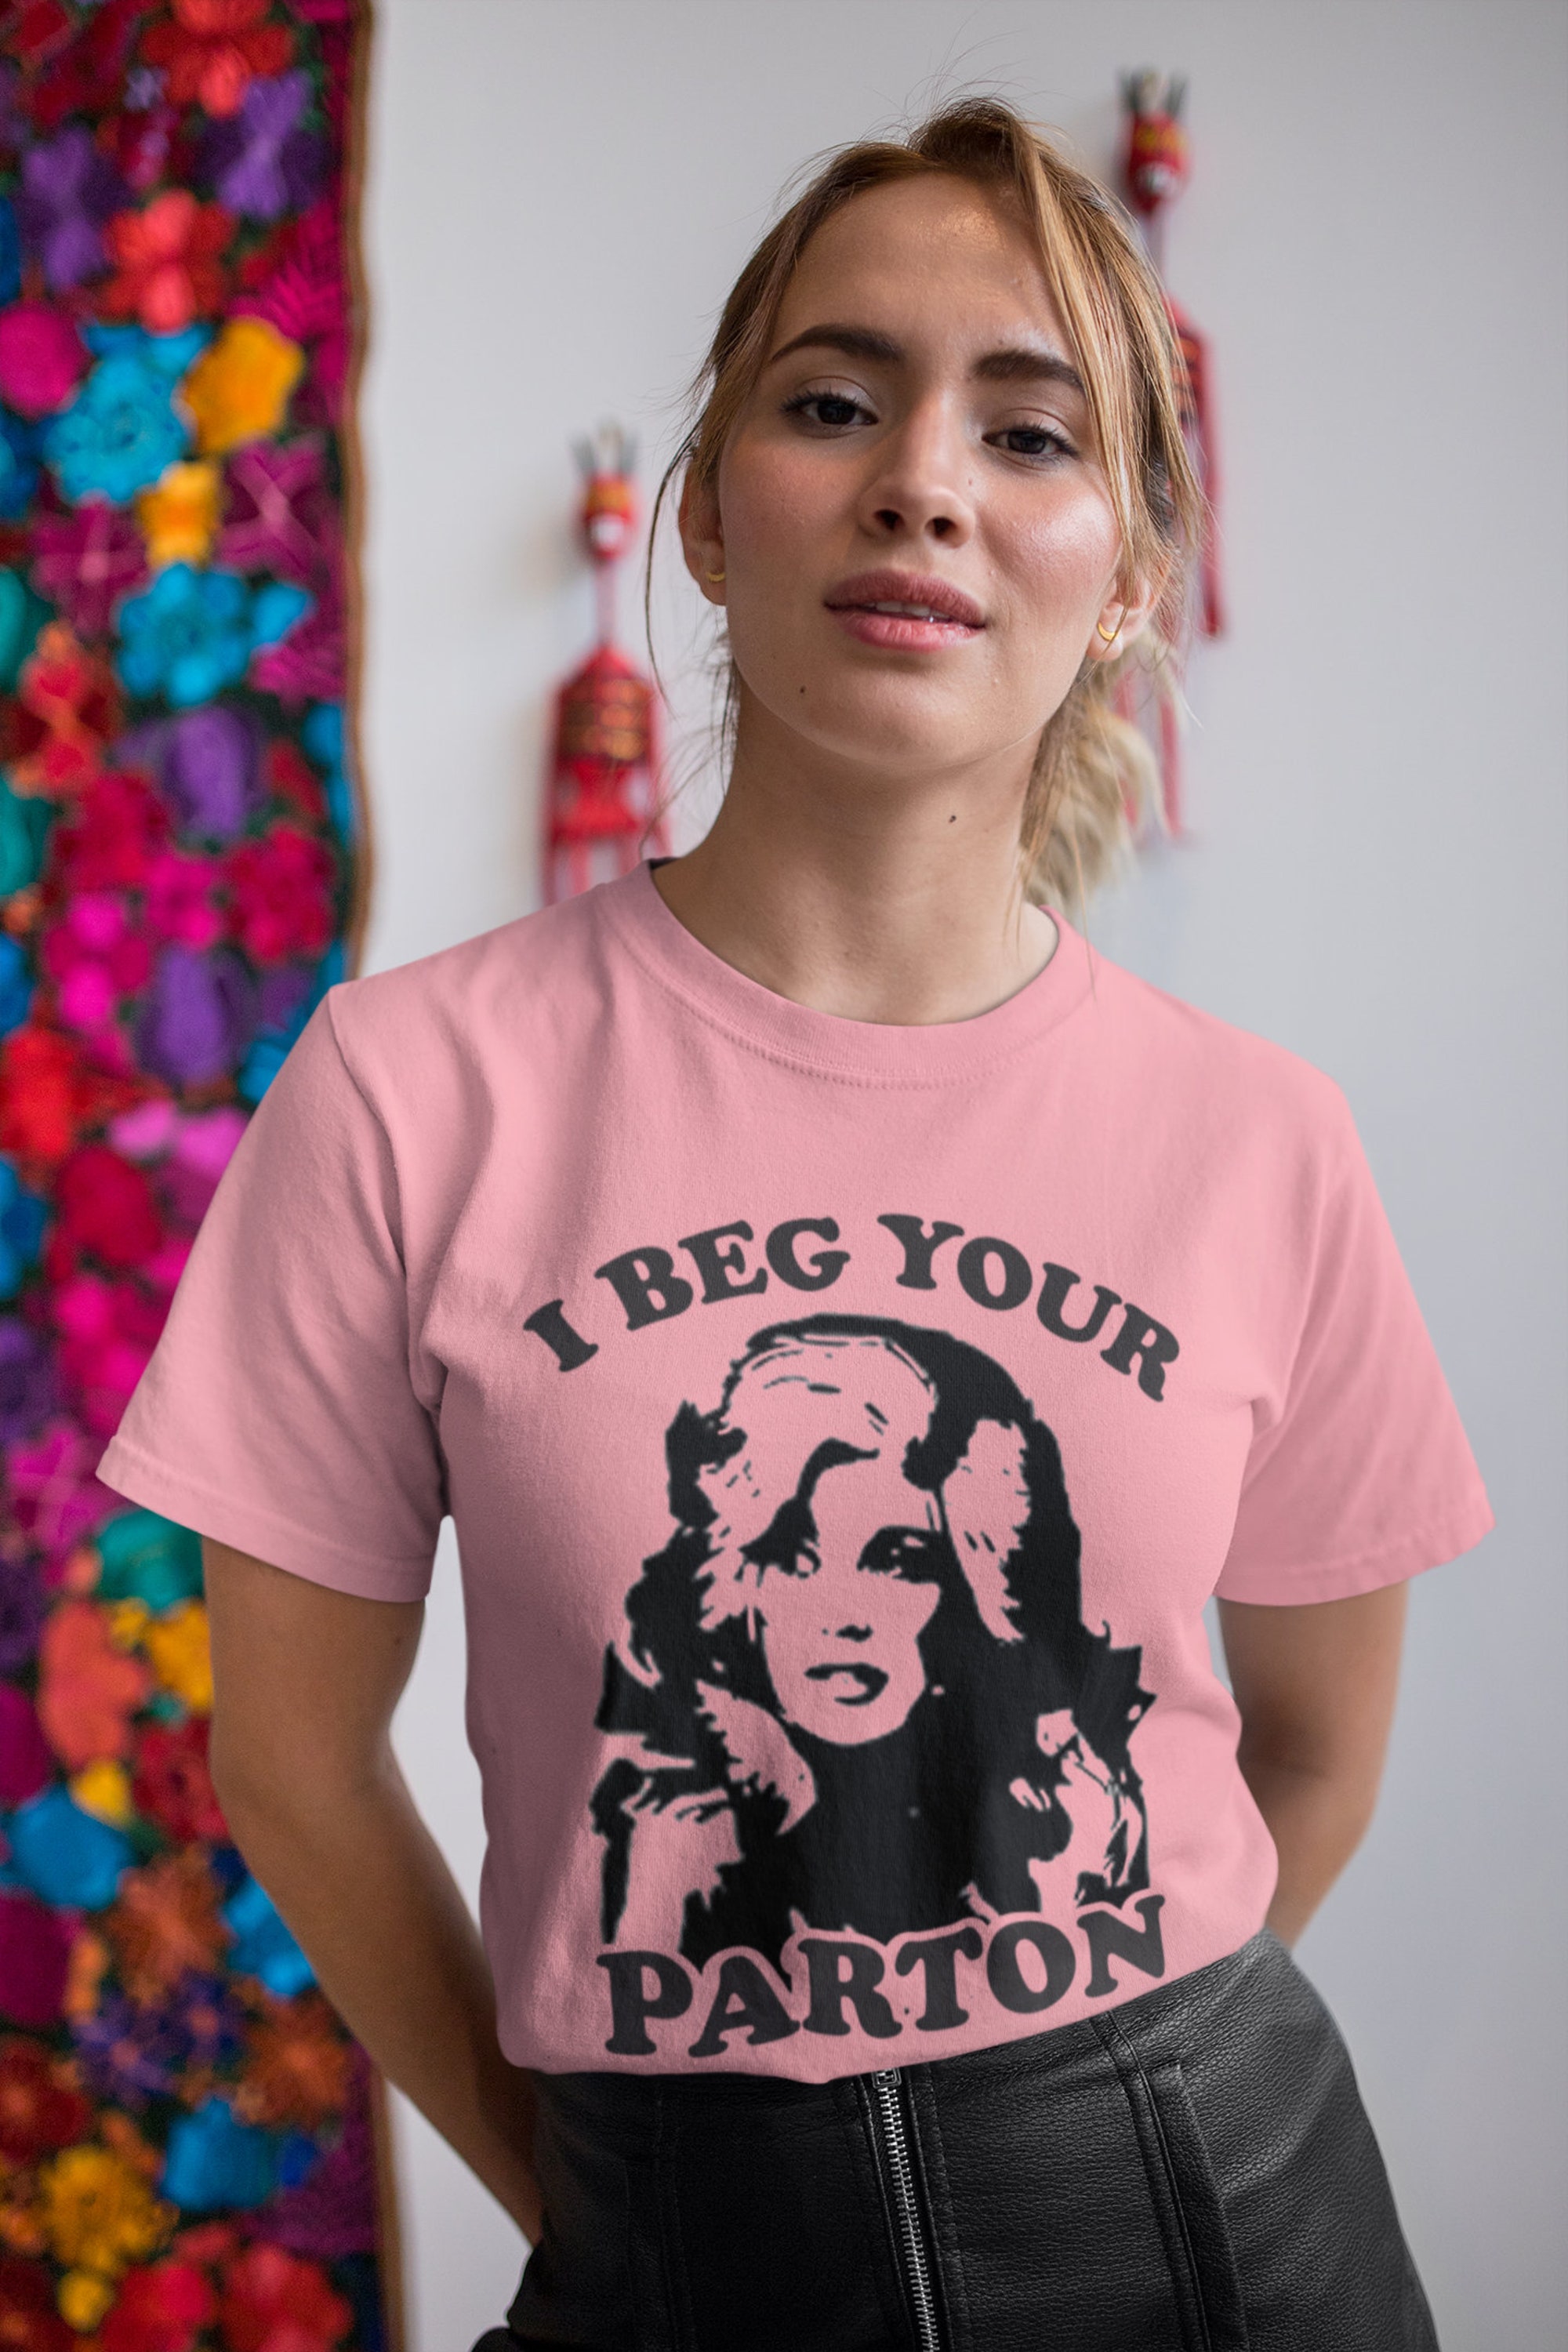 Discover Dolly Parton I Beg Your Parton T Shirt